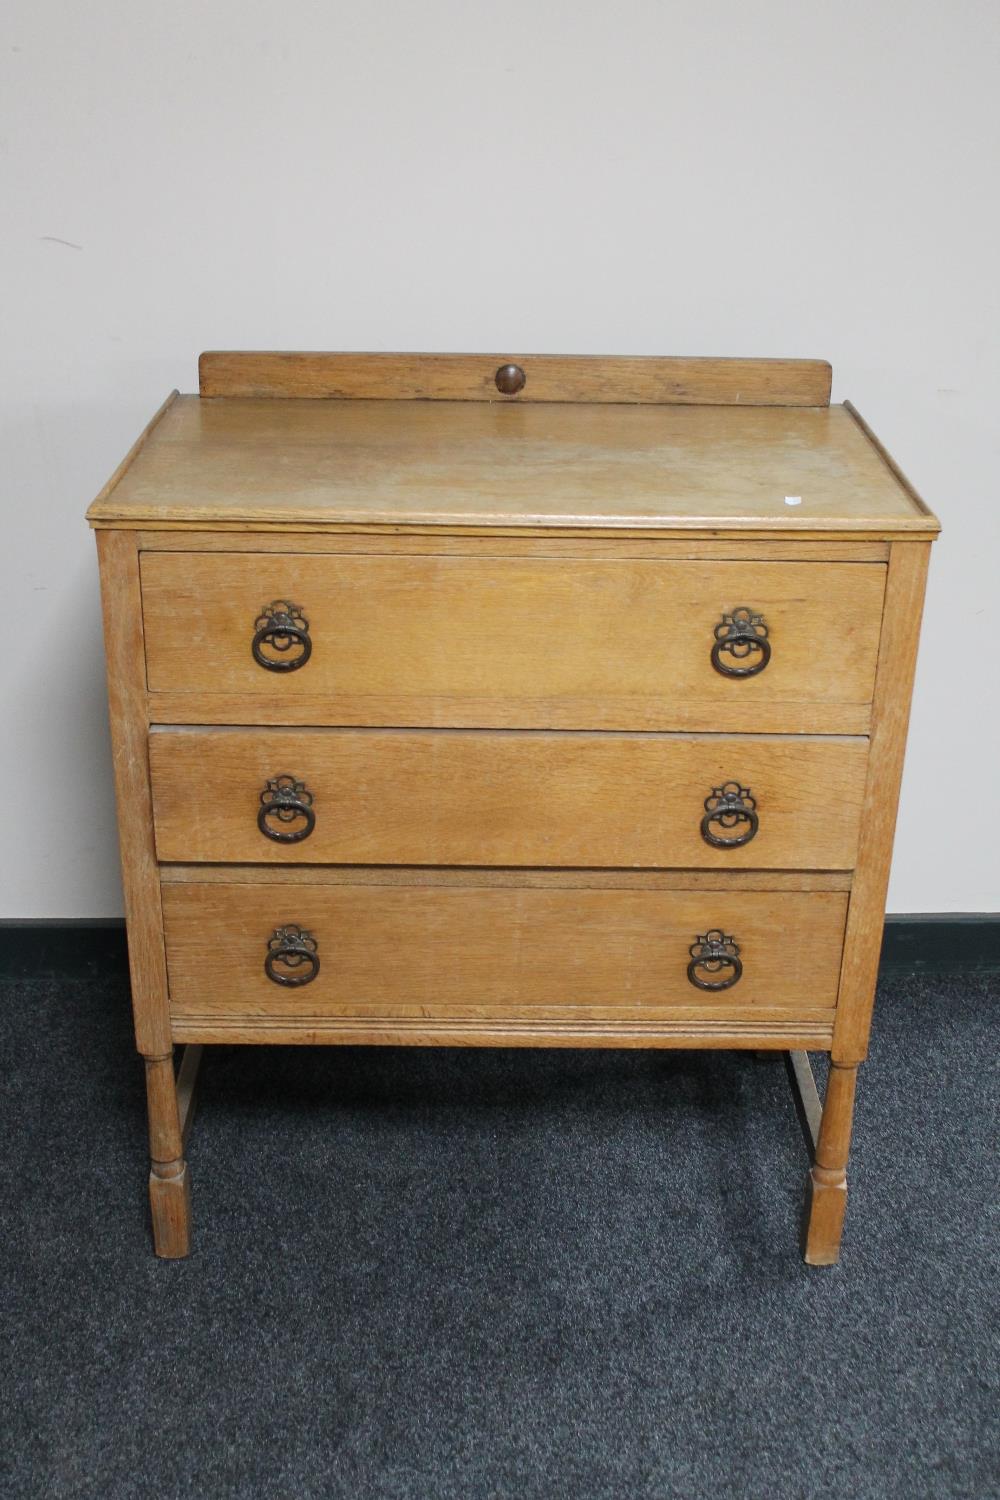 An Edwardian three drawer oak chest